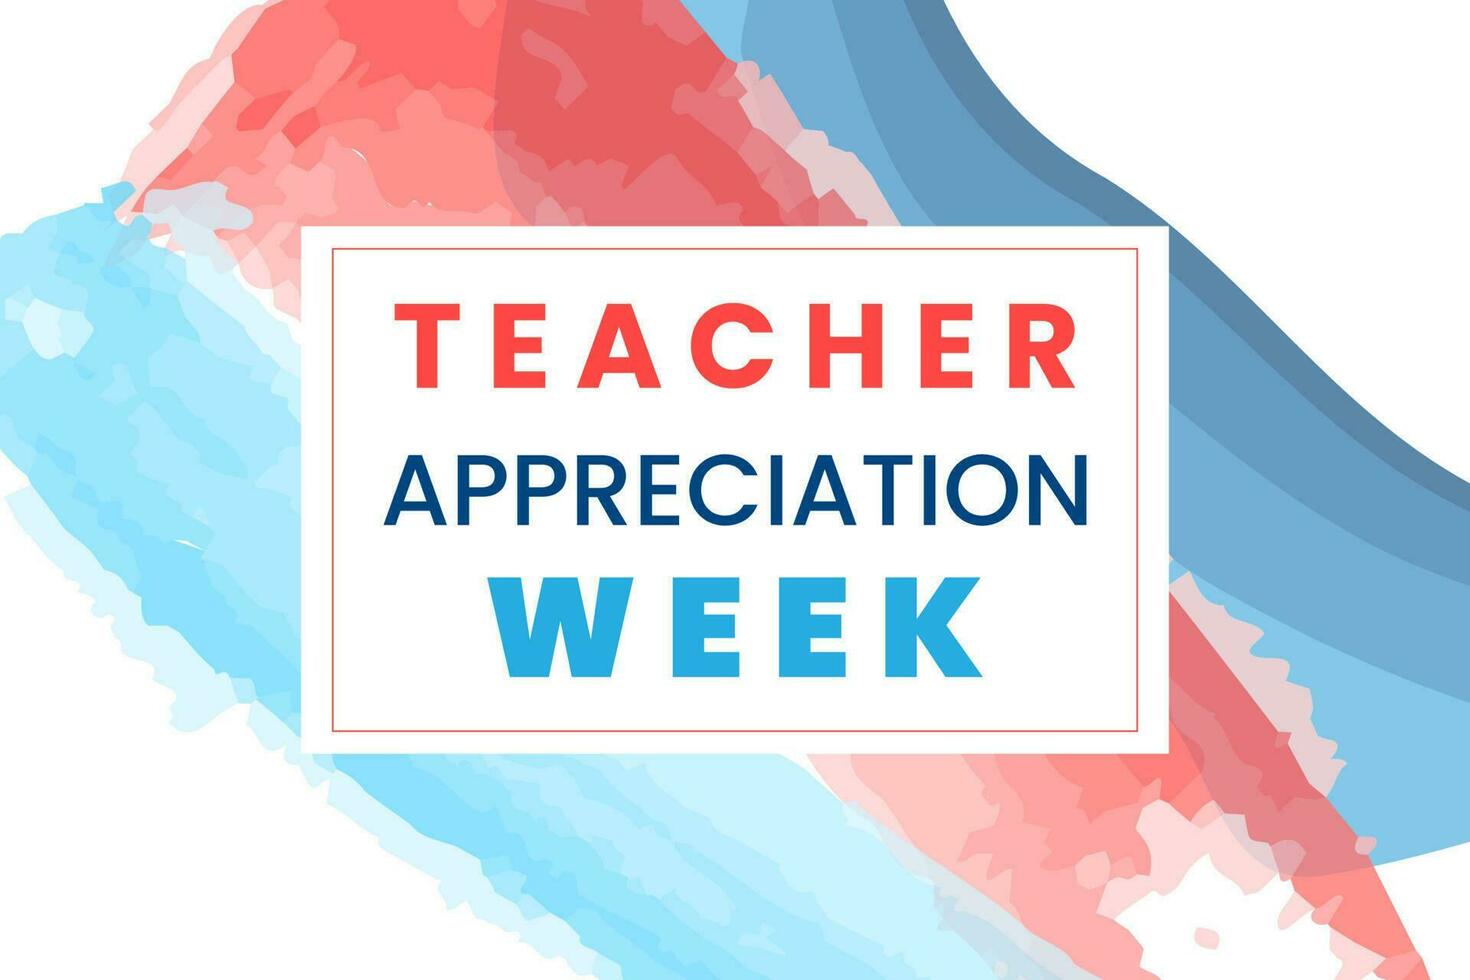 profesor apreciación semana es observado anualmente en mayo en el unido estados en honor de profesores quien difícil trabajo y enseñar nuestra niños. colegio y educación. vector ilustración.